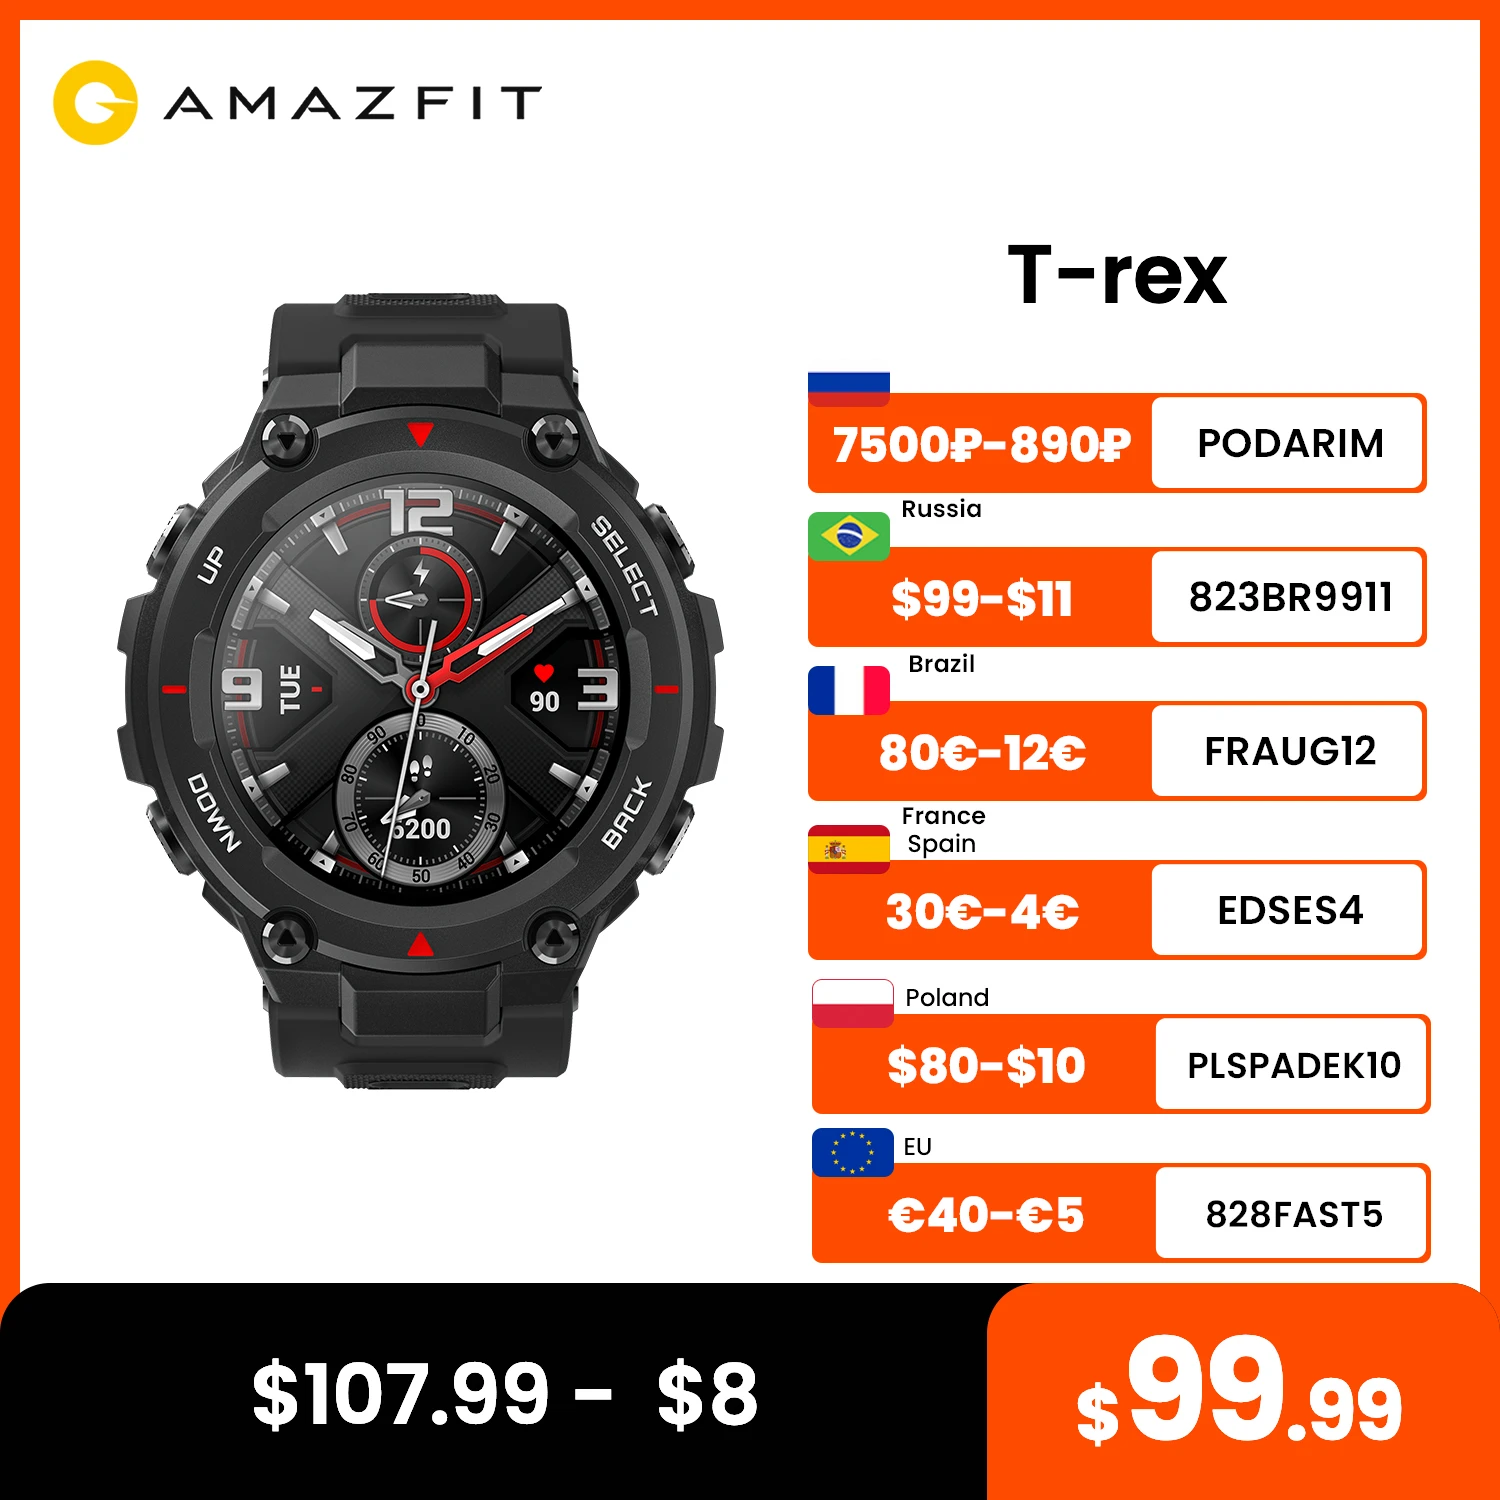 Oryginalny Amazfit T rex t-rex Smartwatch dla mężczyzn 5ATM sterowanie muzyka GPS inteligentny zegarek 20 dni żywotność baterii MIL-STD dla androida